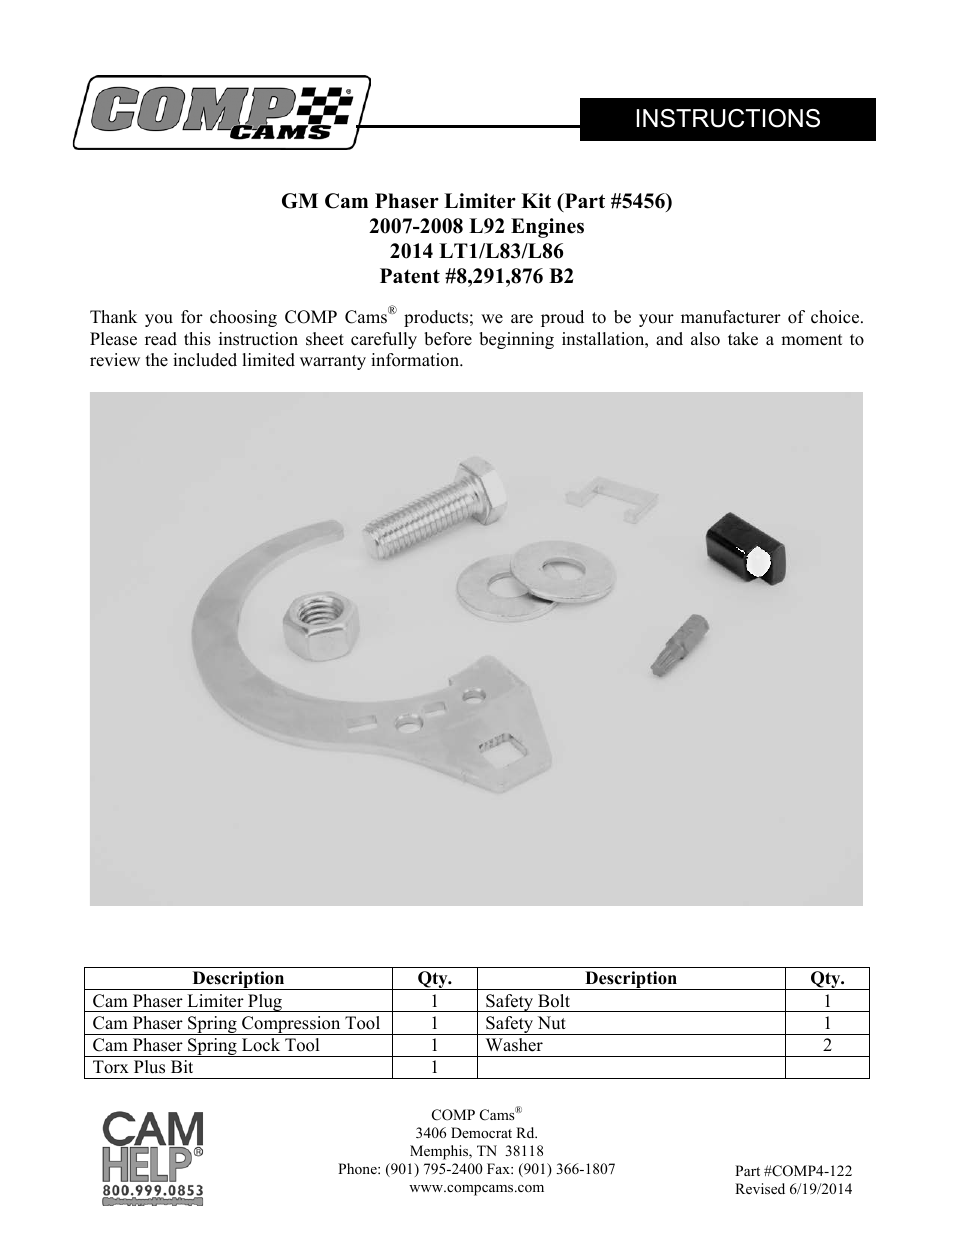 5456 GM Cam Phaser Limiter Kit